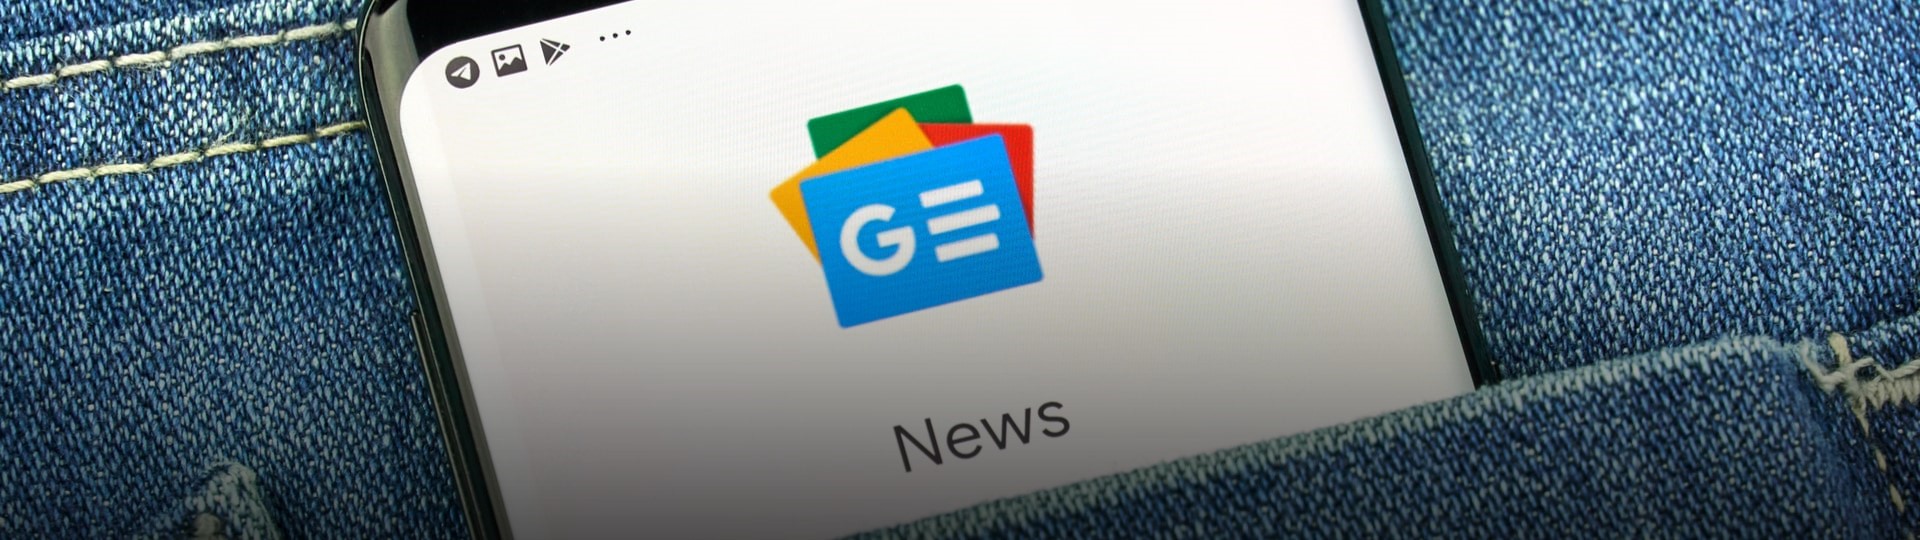 Australská Seven West se dohodla s Googlem na platbách za zprávy